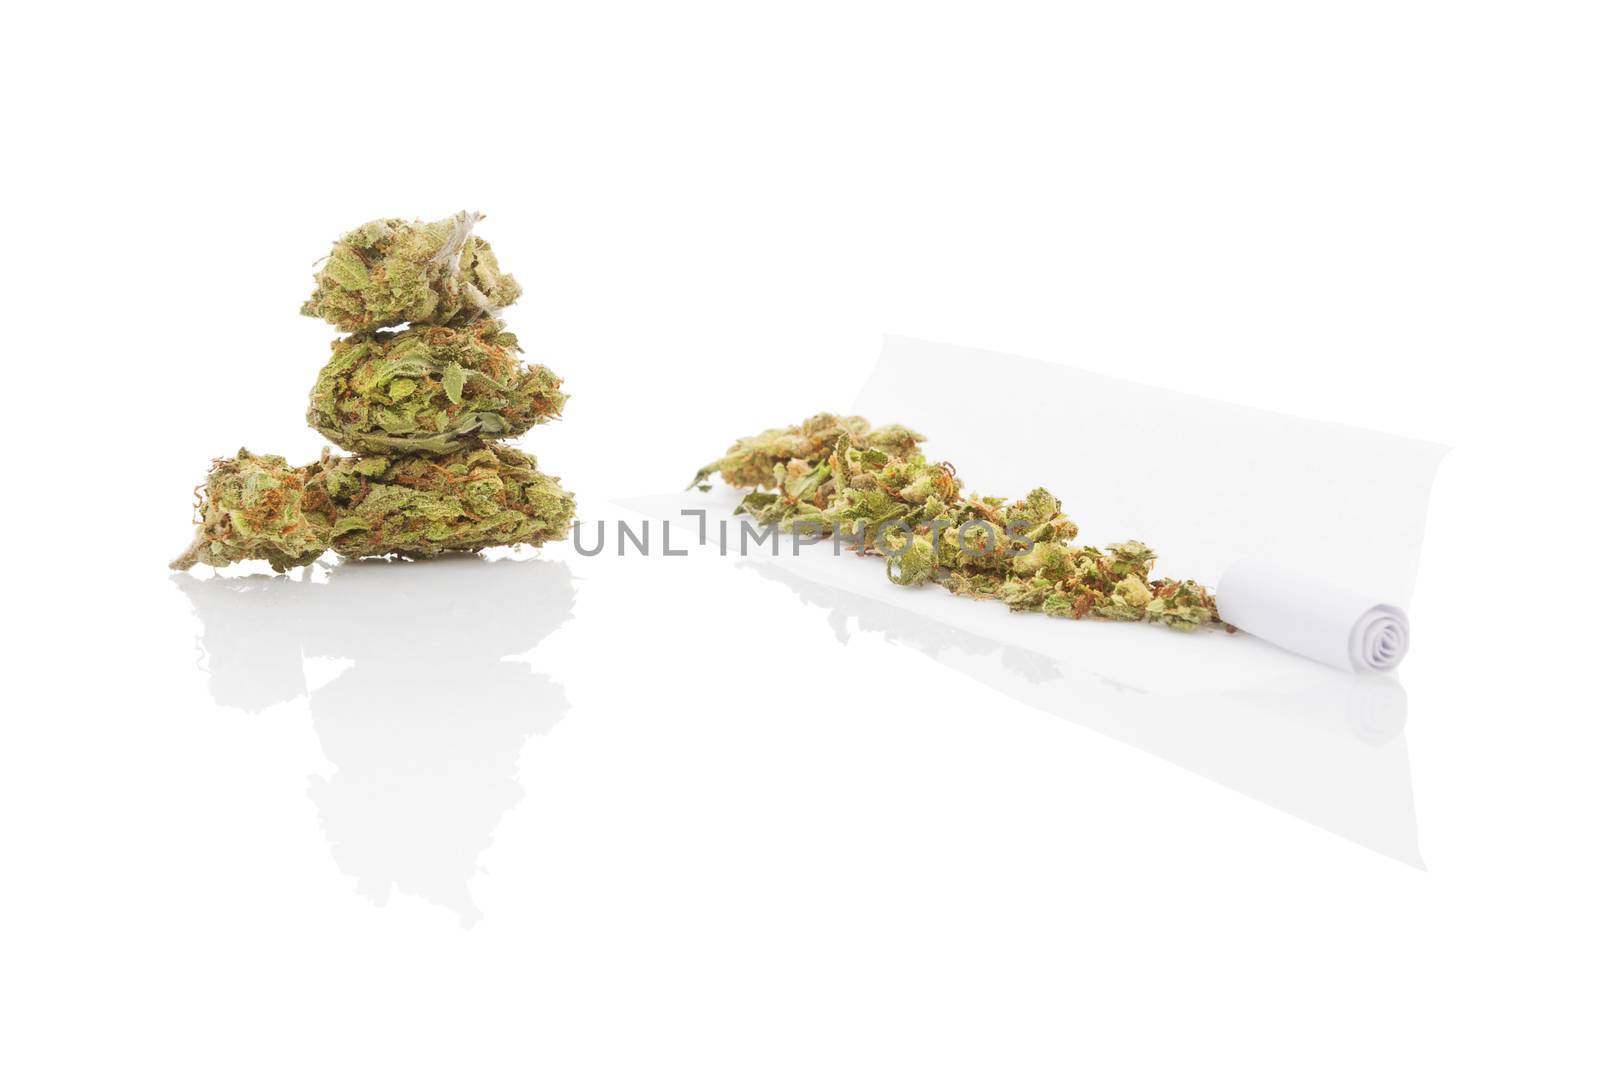 Smoking marijuana. Cannabis abuse. Marijuana bud, hashish, and rolled joint isolated on white background. 